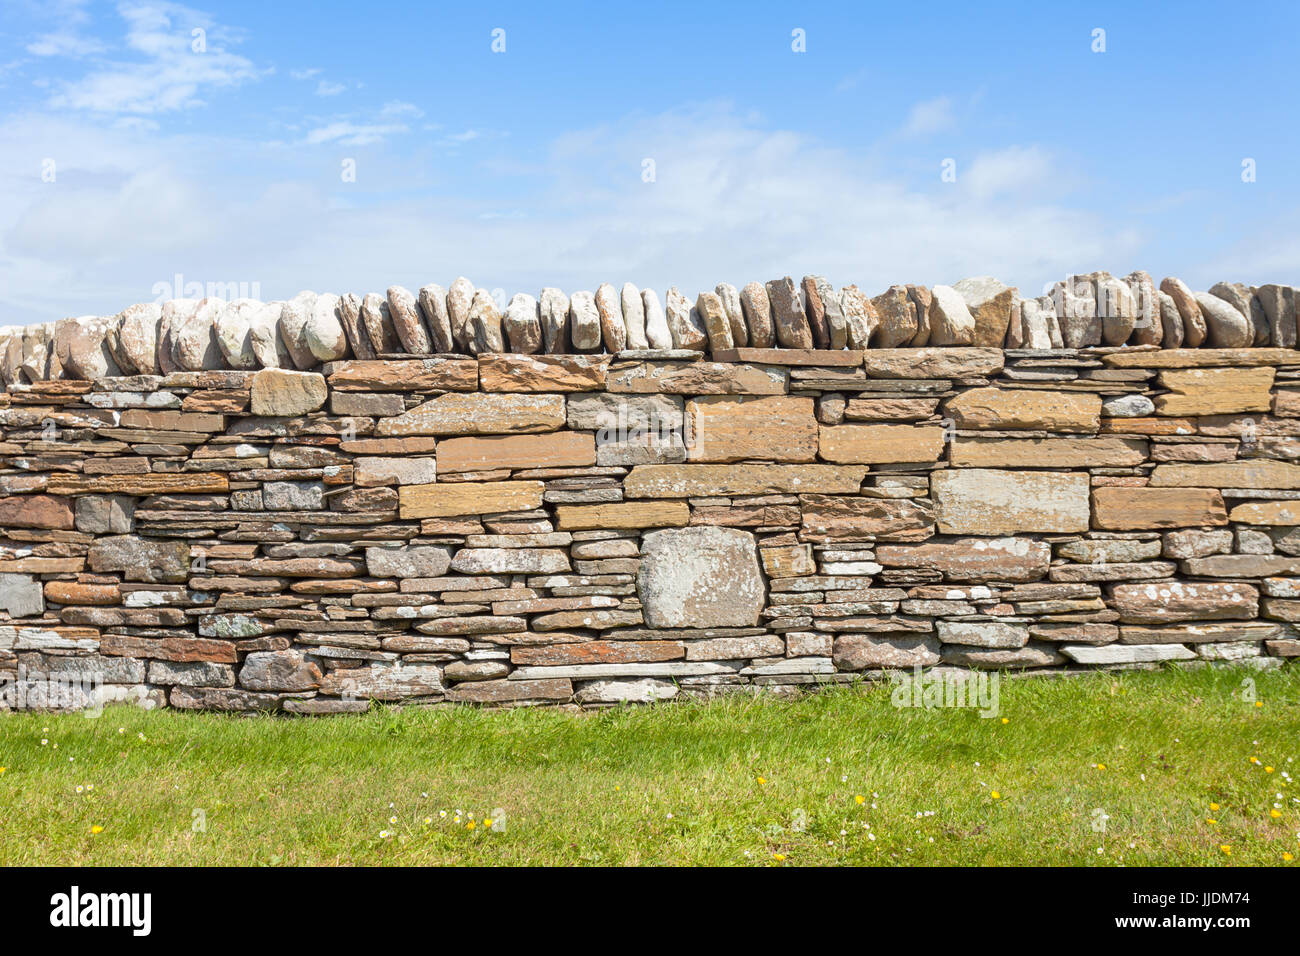 Drystone muro de piedra seca en Escocia con piedras y piedras tapado Foto de stock